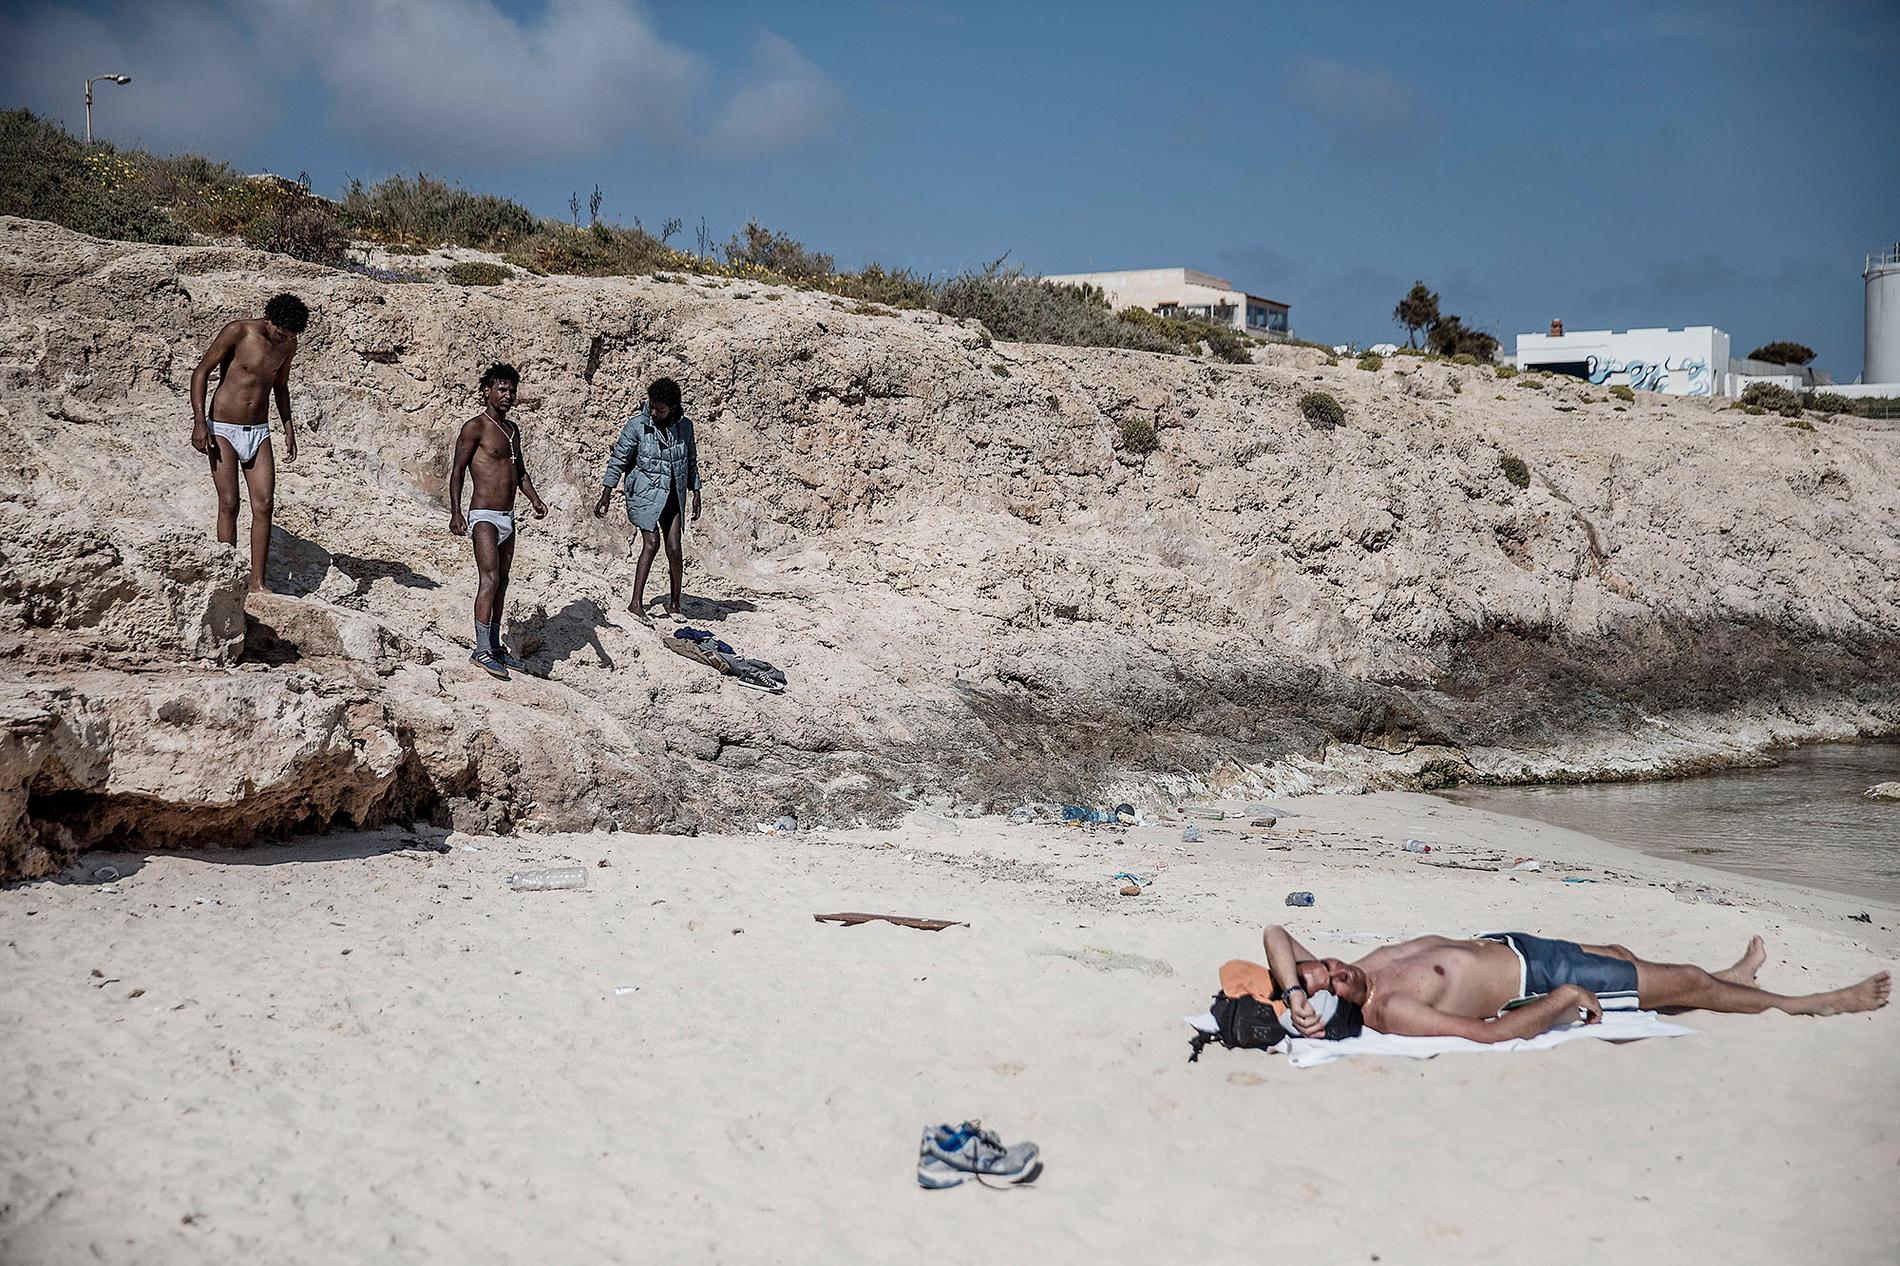 Lampedusa, ön som ligger mitt i medelhavet och blivit en av de första anhalterna för båtflyktingar.  Robel, Nohom, Meron, Anbesa, Amanuel från Eritrea badar i det kristallblåa vattnet på en av lampedusas stränder. Under dagarna har de möjlighet att lämna det inhägnade lägret de bor i.